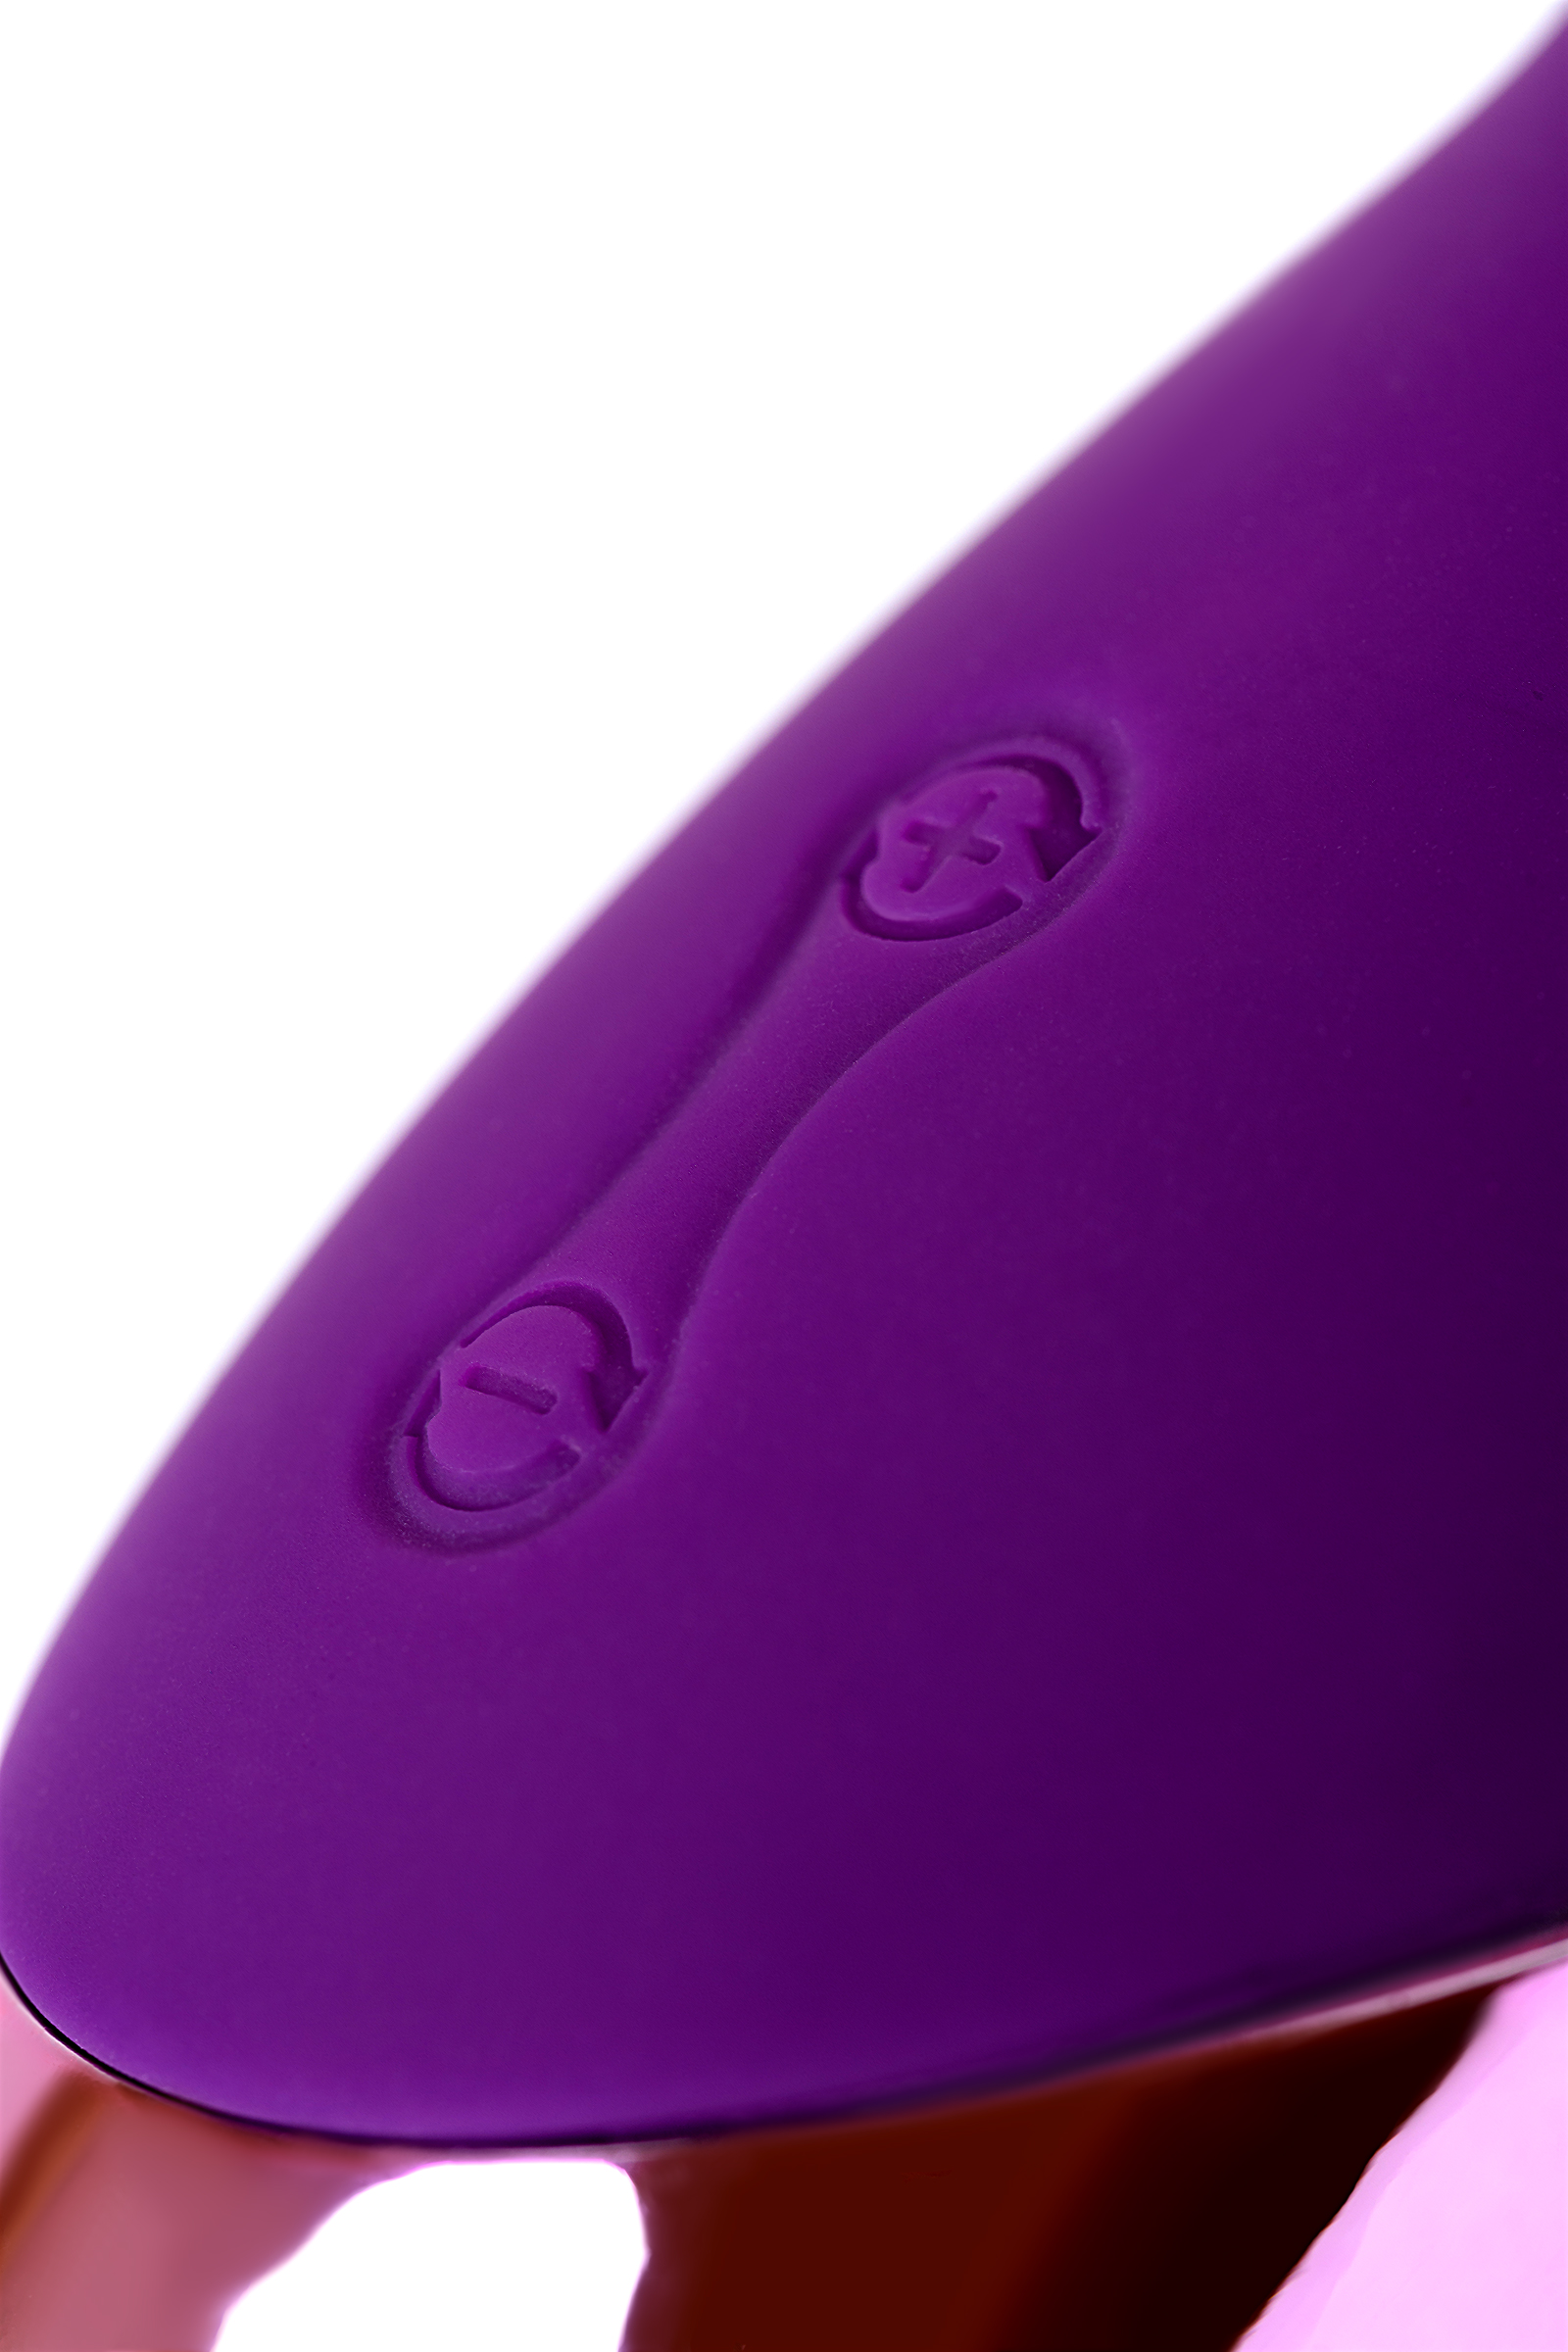 Стимулятор эрогенных зон Eromantica BUNNY, силикон, фиолетовый, 12,5. Фото N12